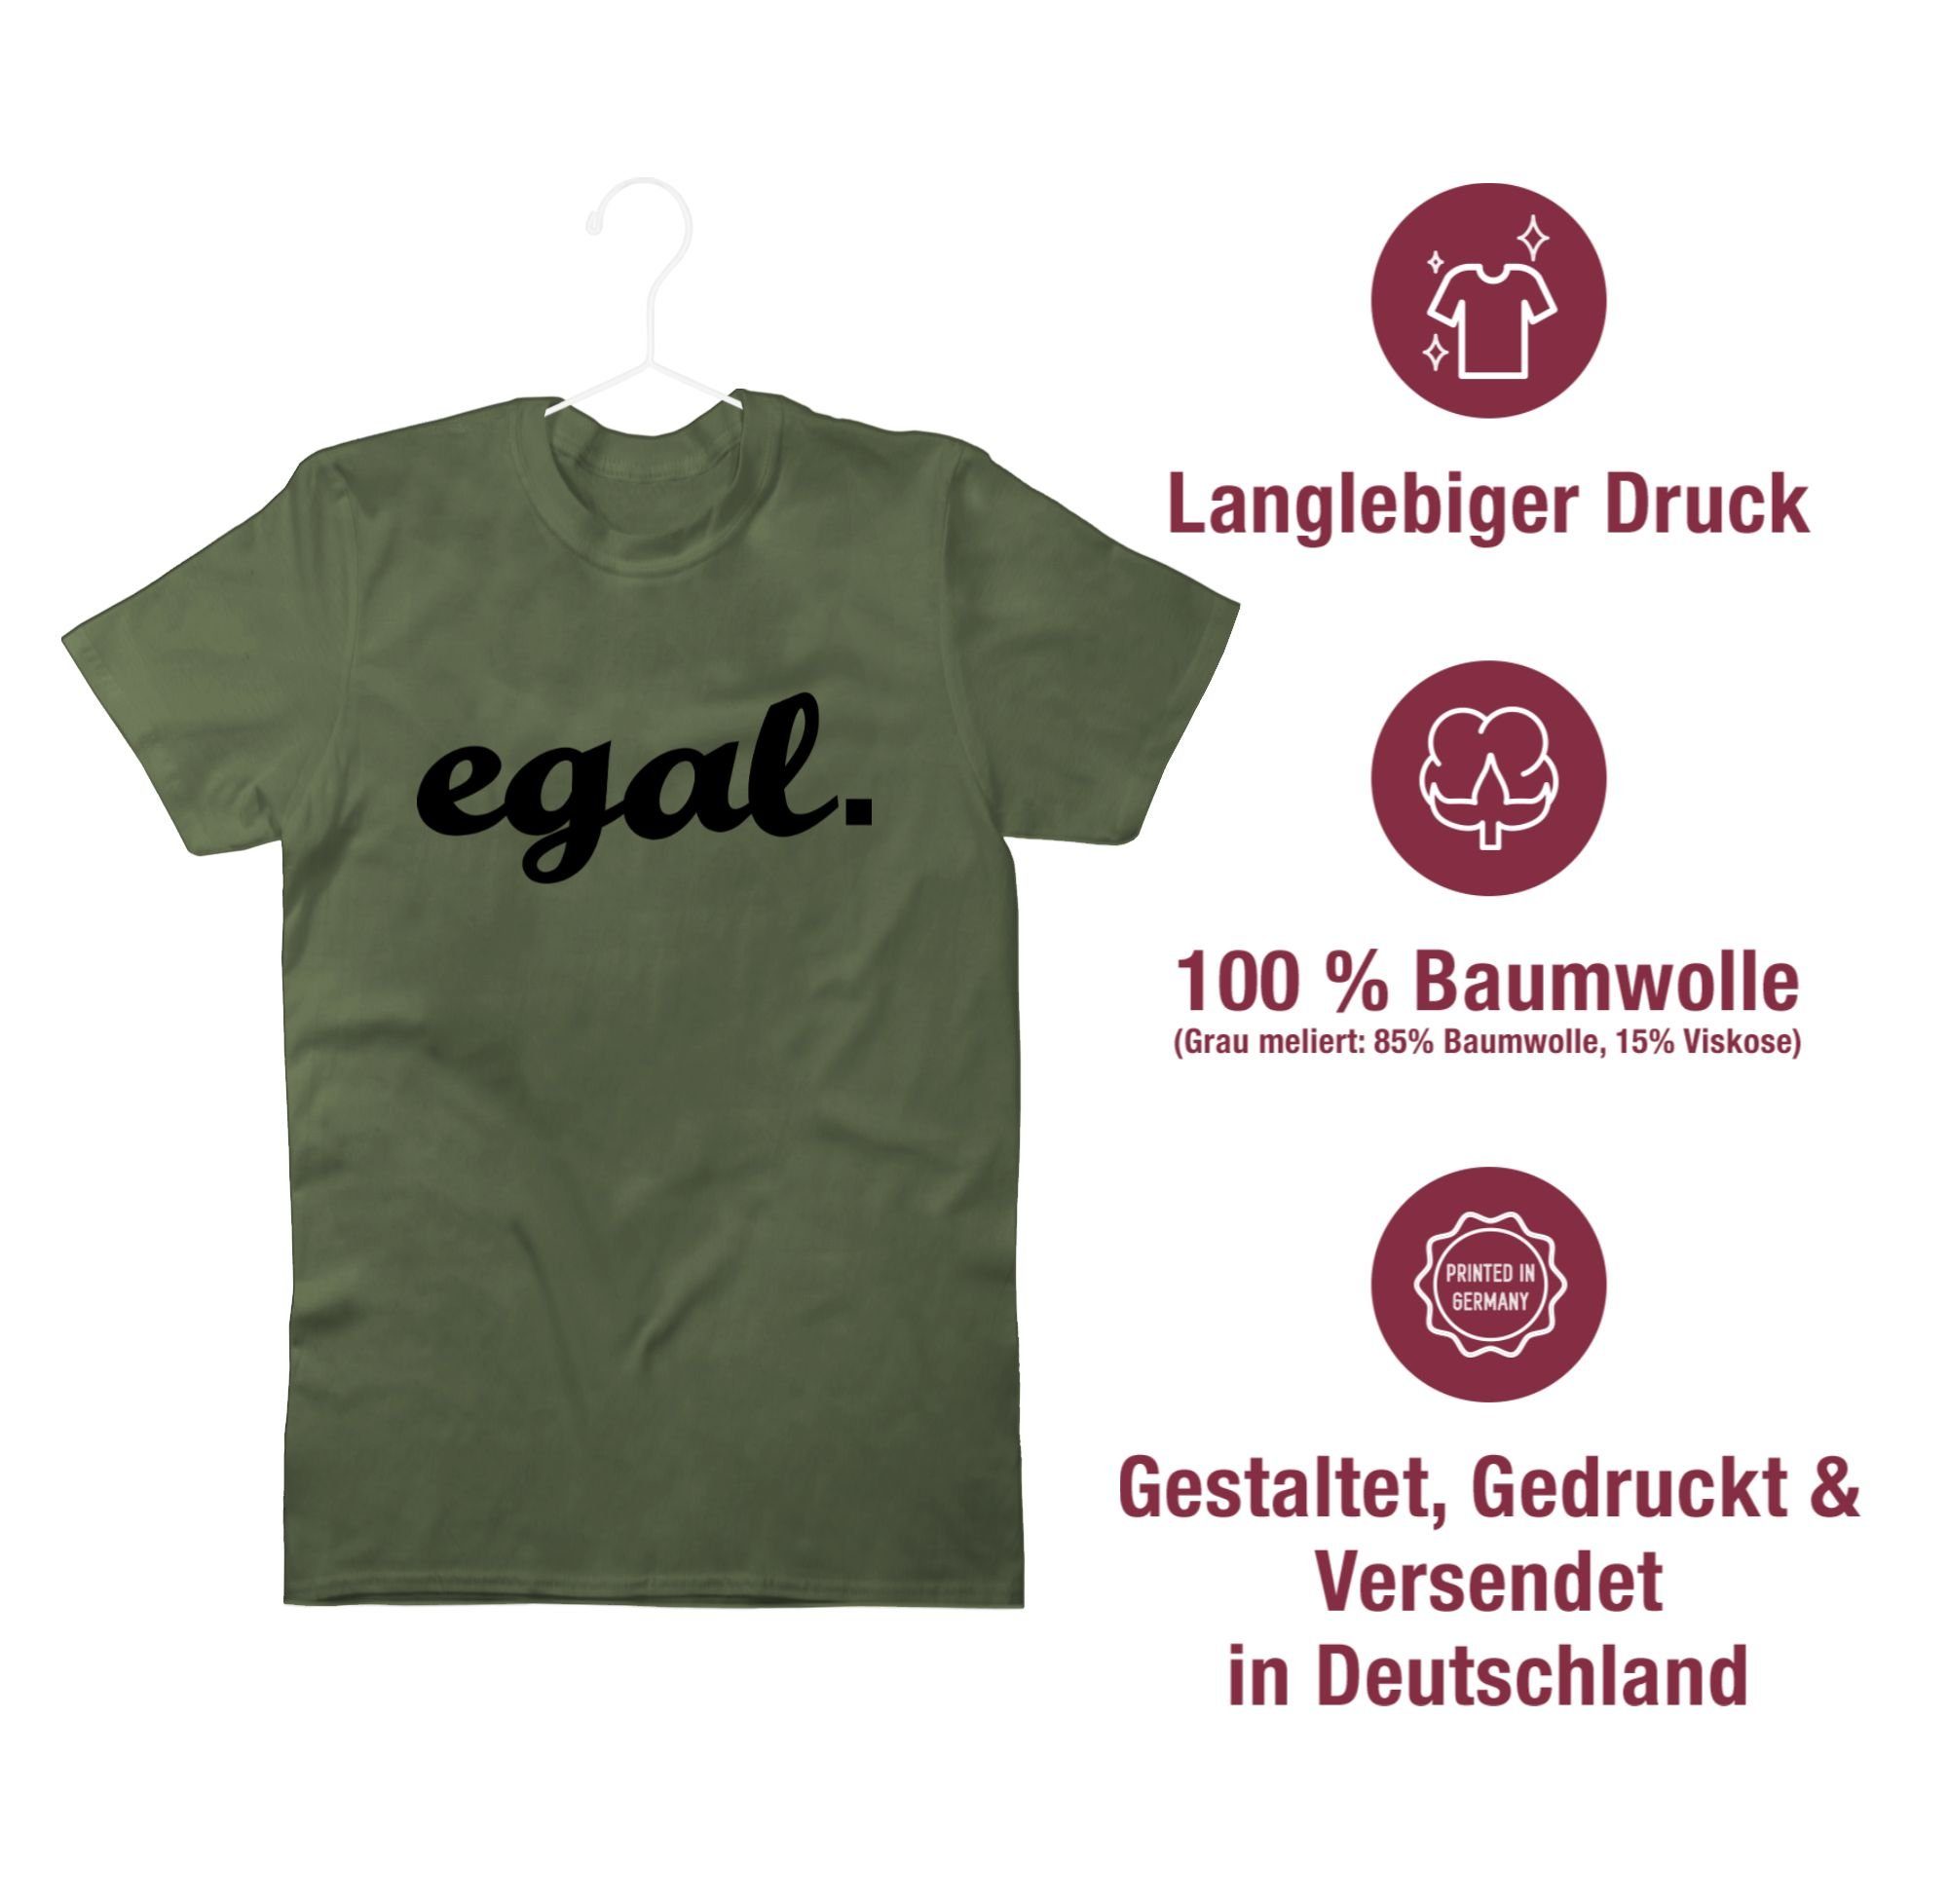 Statement schwarz Kursiv Shirtracer Army - Egal Grün T-Shirt 02 Sprüche